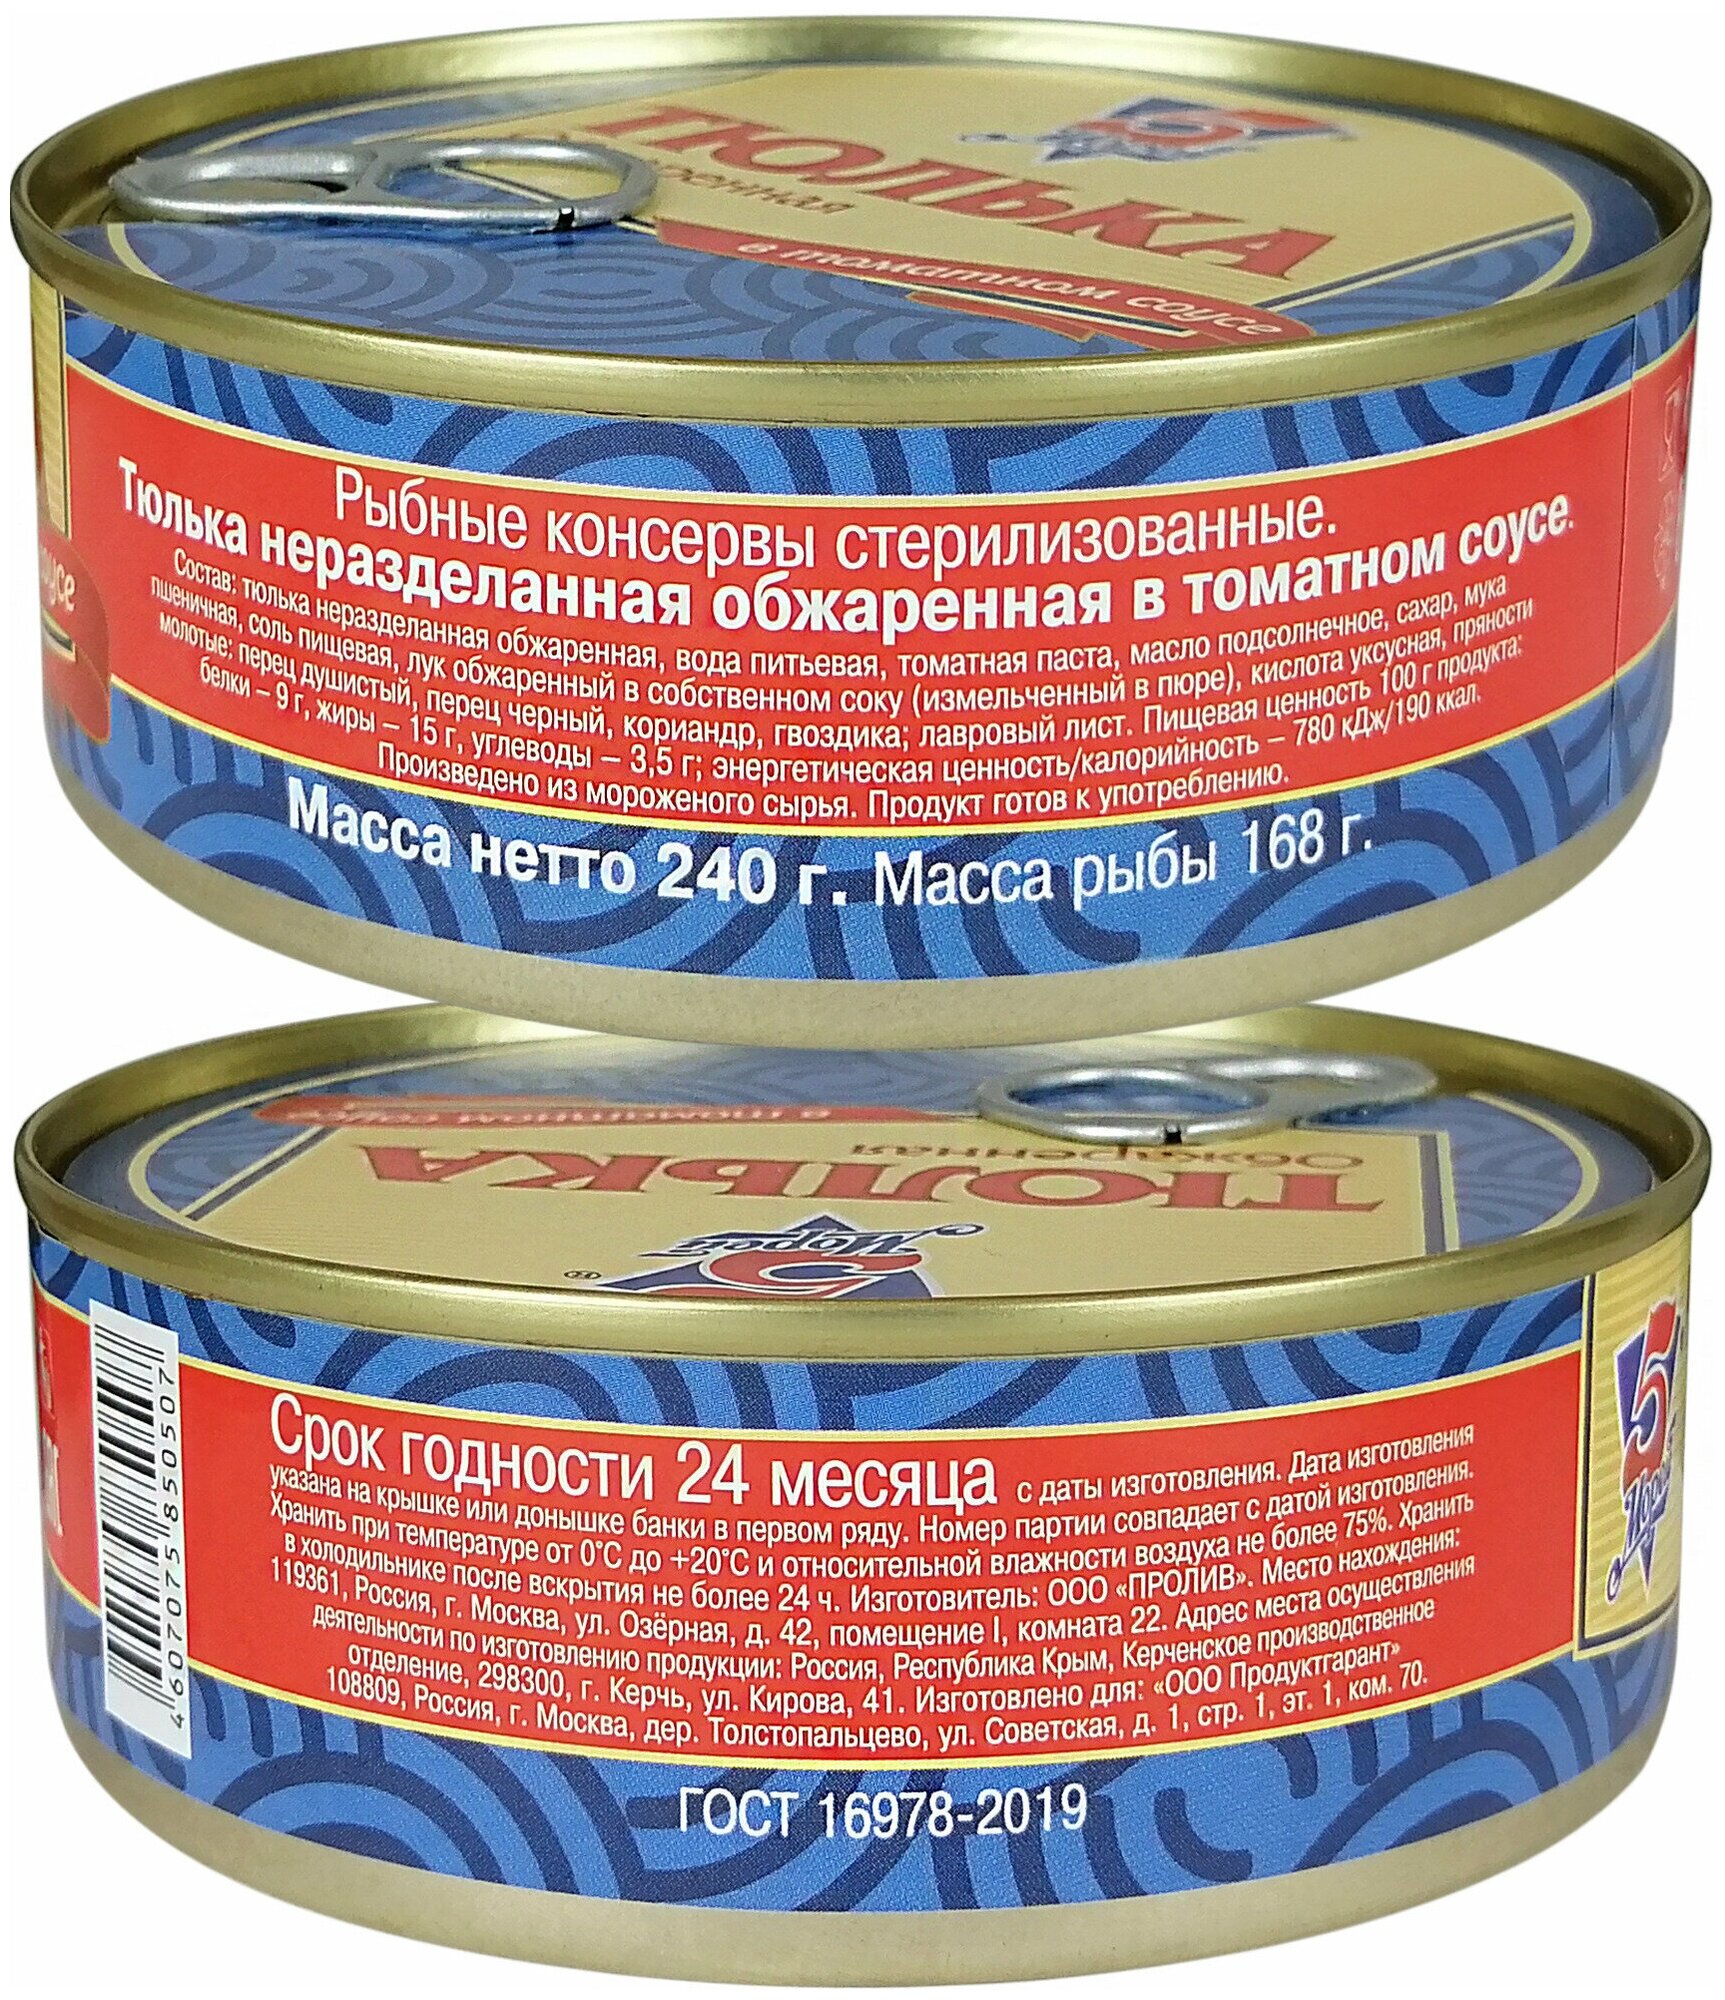 Консервы рыбные 5 Морей - Тюлька неразделанная обжаренная в томатном соусе, 240 г - 2 шт